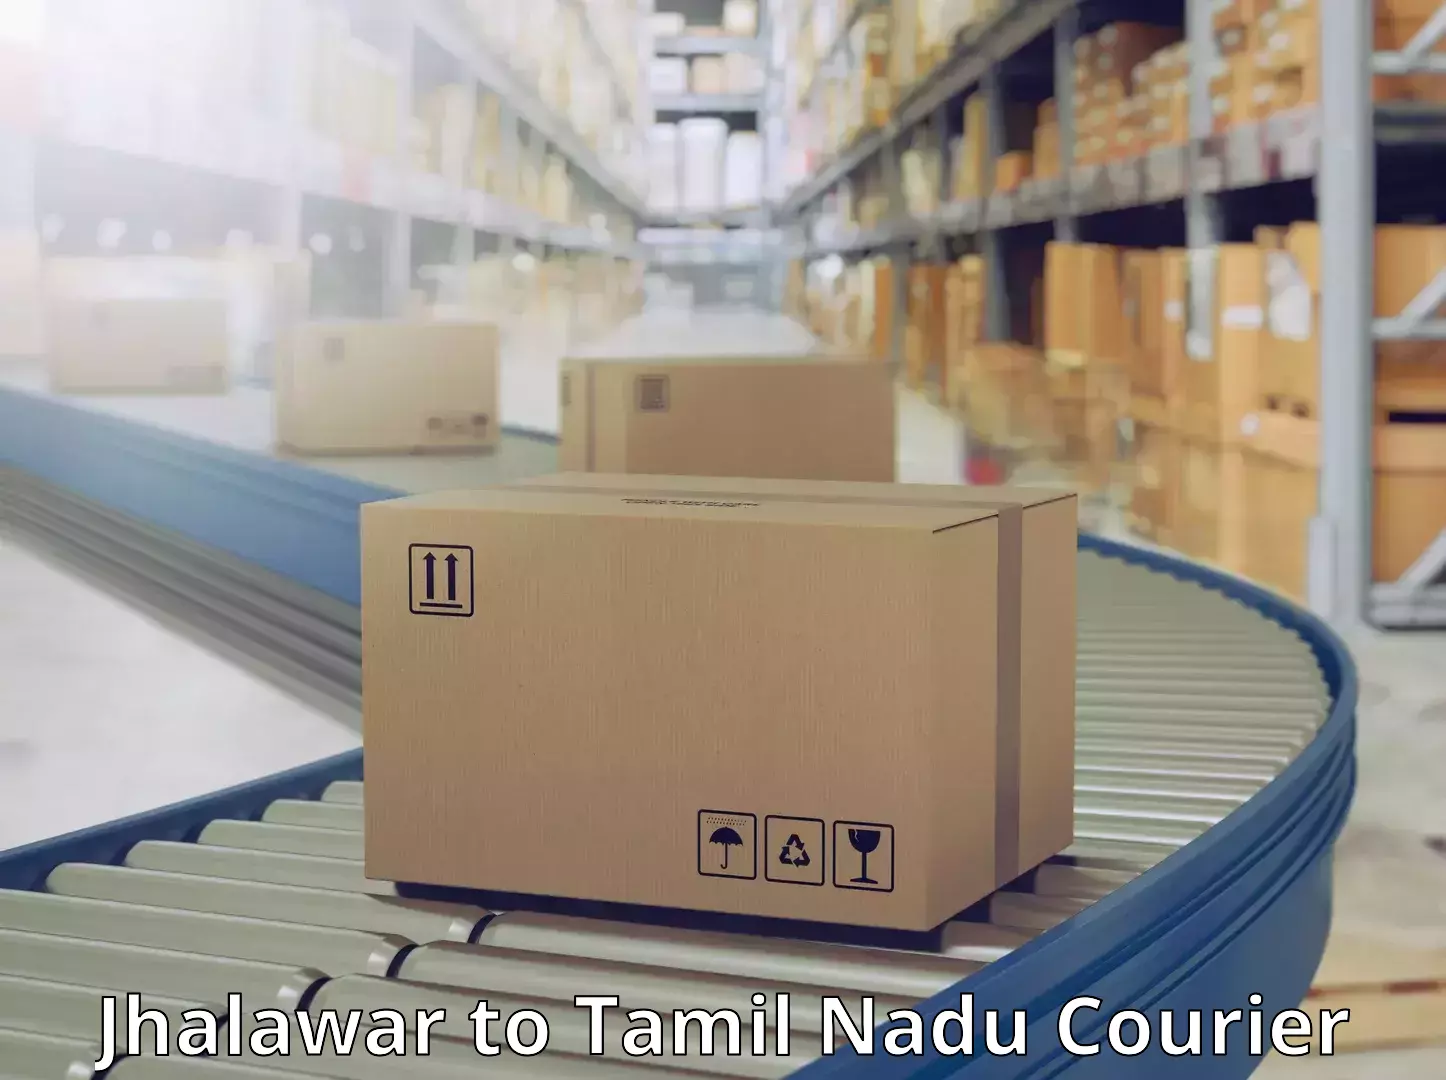 Cash on delivery service Jhalawar to Tamil Nadu